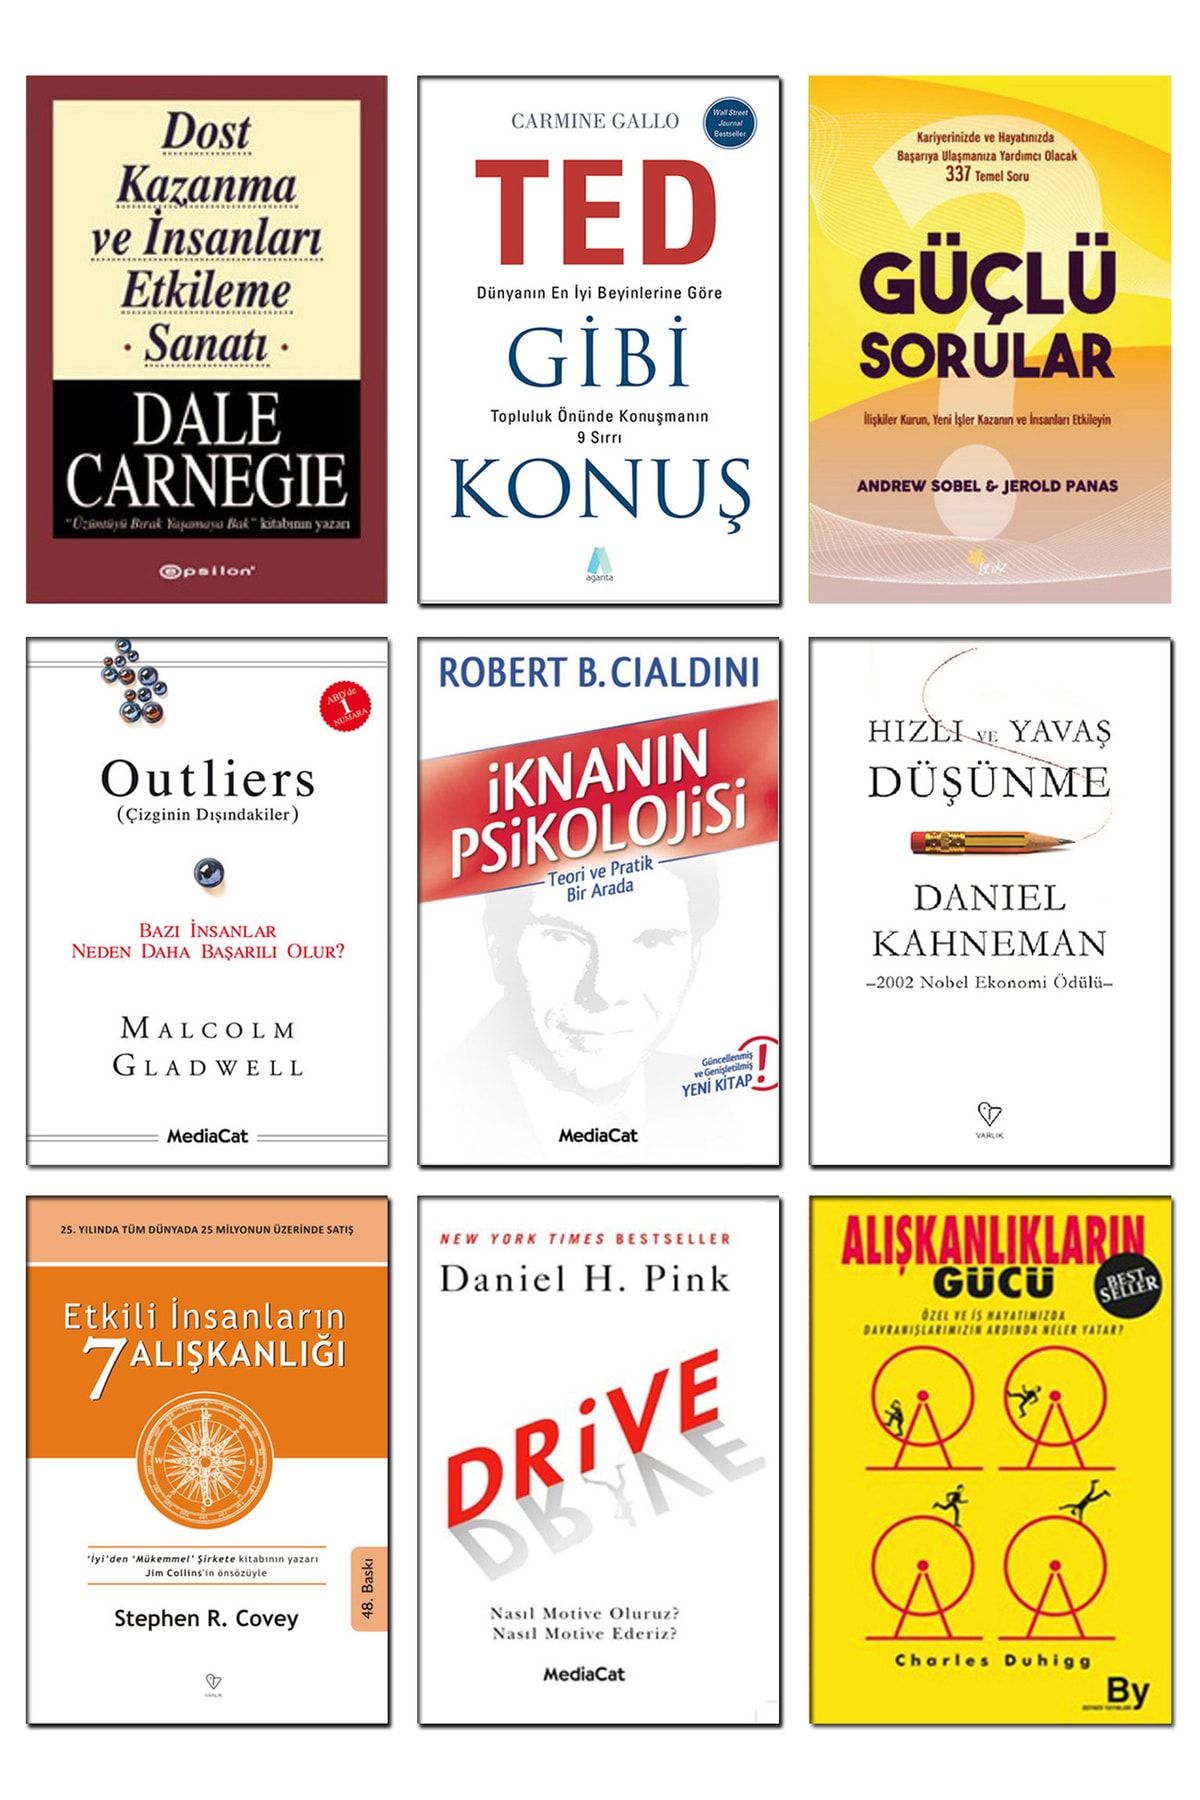 MediaCat Kitapları Outliers Ted Gibi Konuş Carmine Gallo Etkili Insanların 7 Alışkanlığı Stephen R. Covey Güçlü Sorular